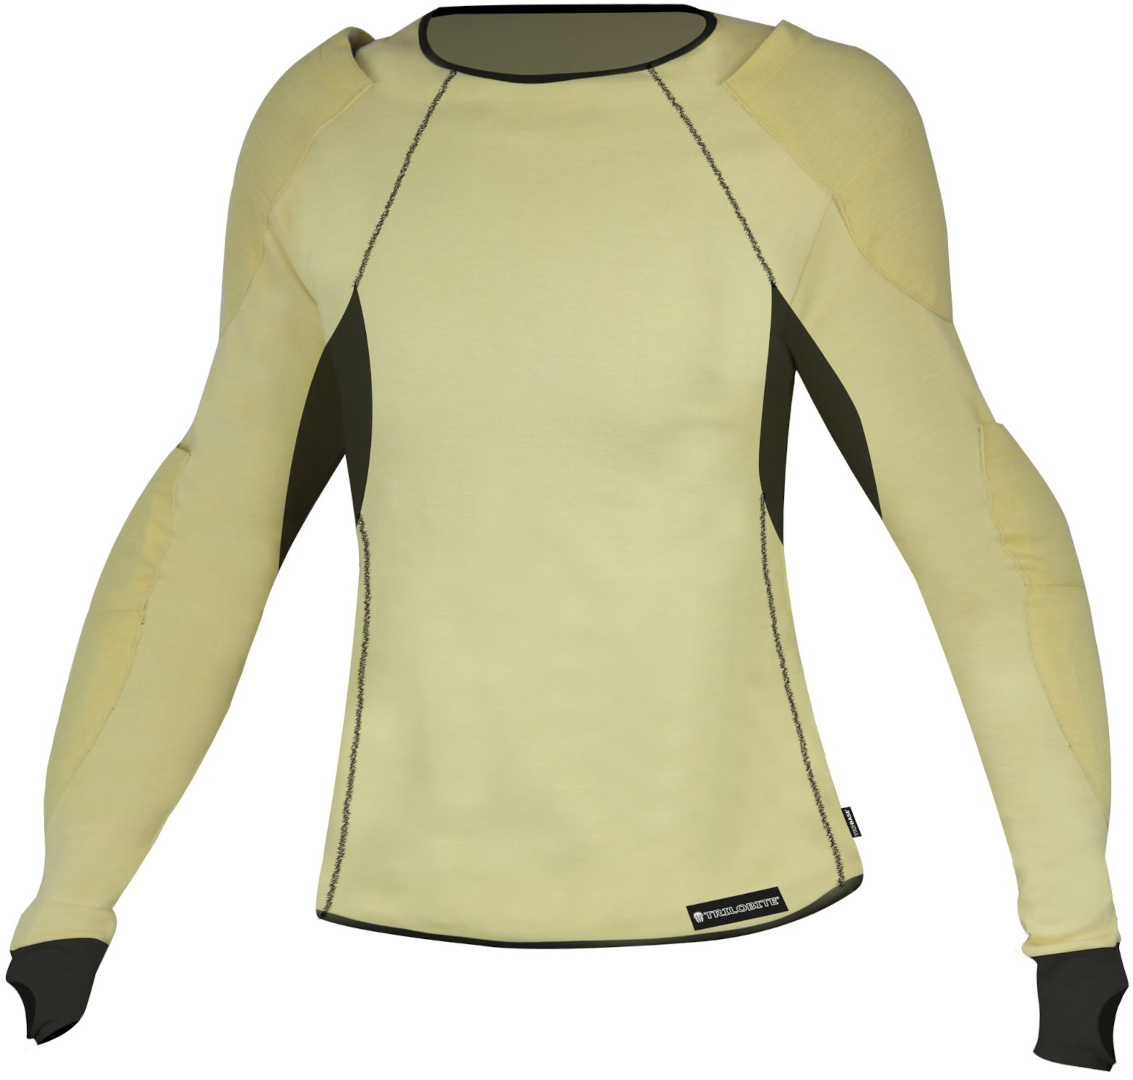 Рубашка женская Trilobite Skintec Aramid функциональная, желтый/зеленый женская мятная рубашка koton зеленый